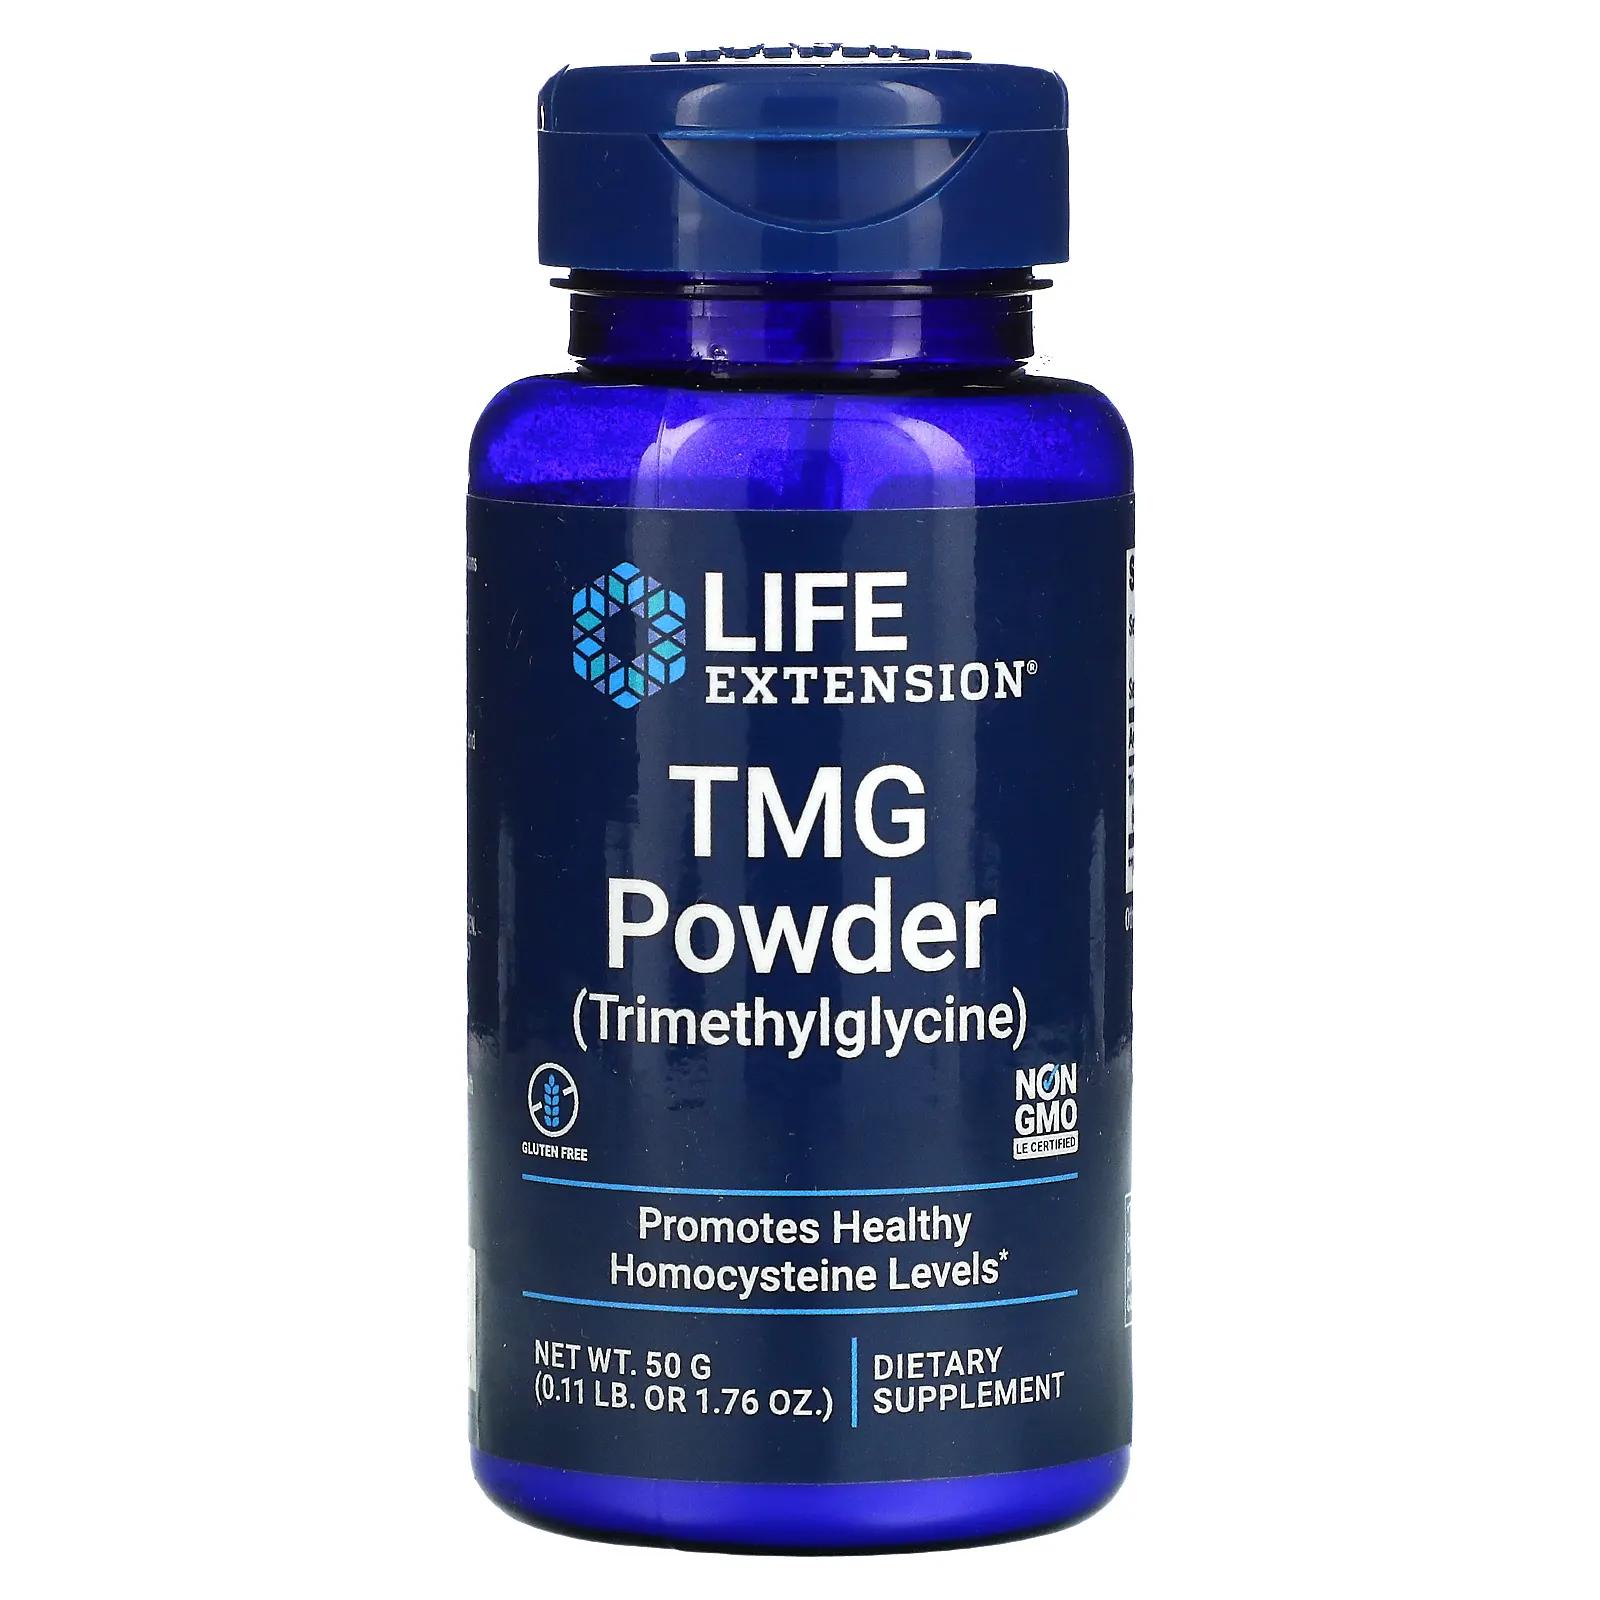 продление жизни супер мирафорте со стандартами life extension Life Extension TMG порошок (триметилглицин) 50 г (1,76 унции)